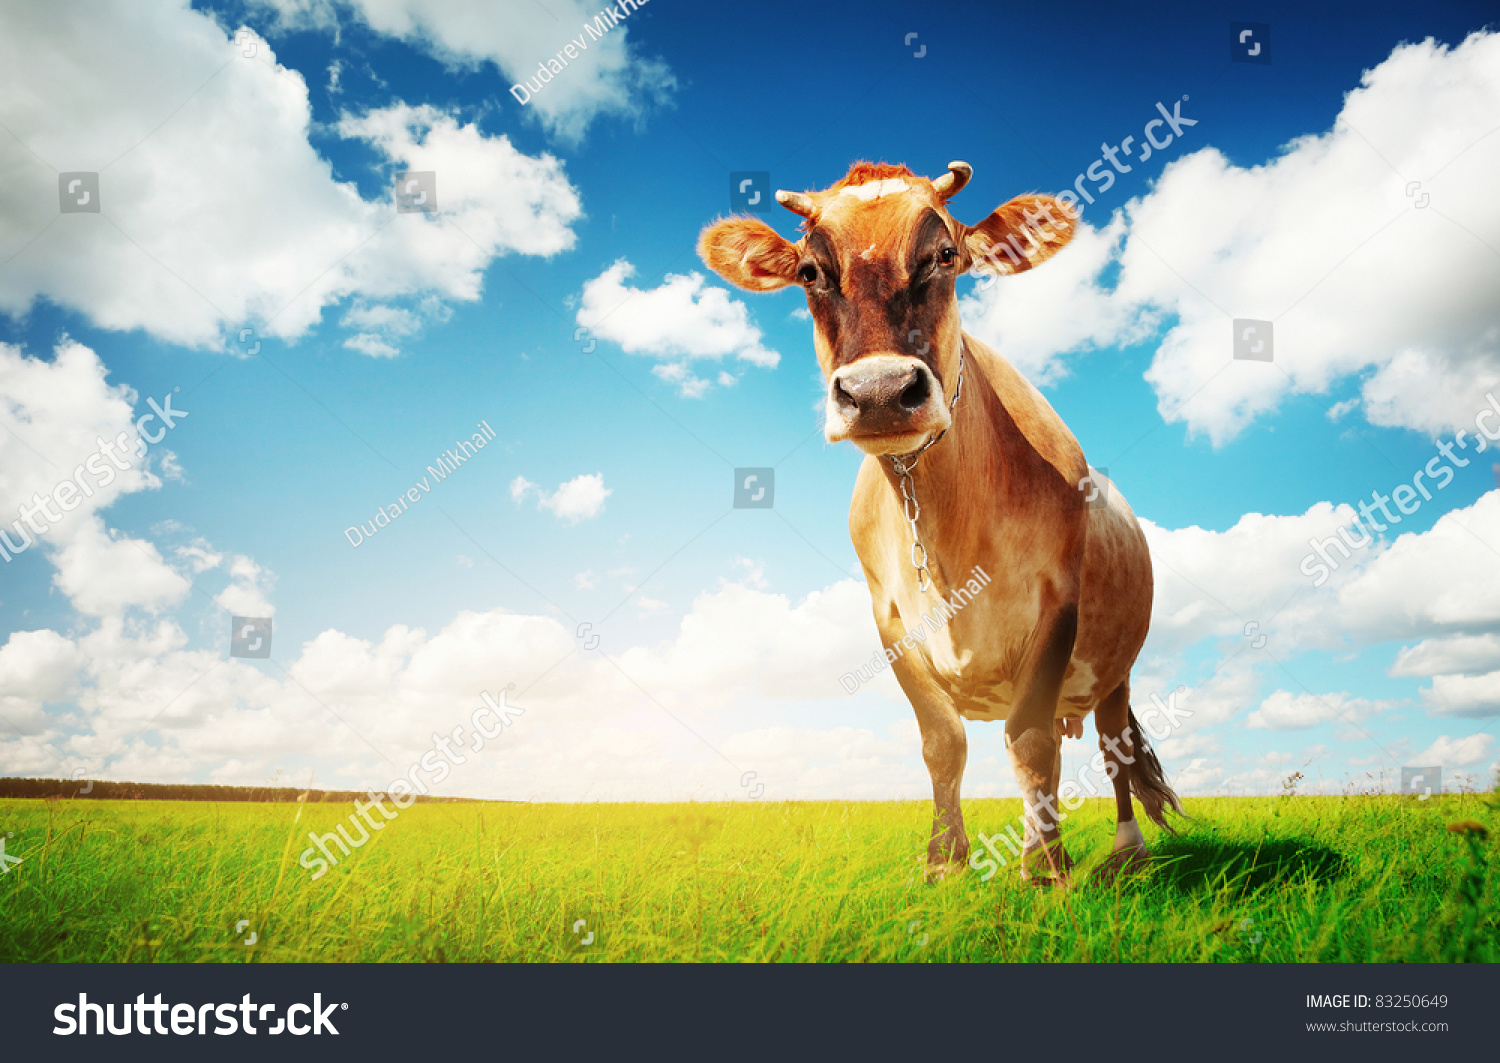 PowerPoint Template cow on green grass (pkjmhnlu)